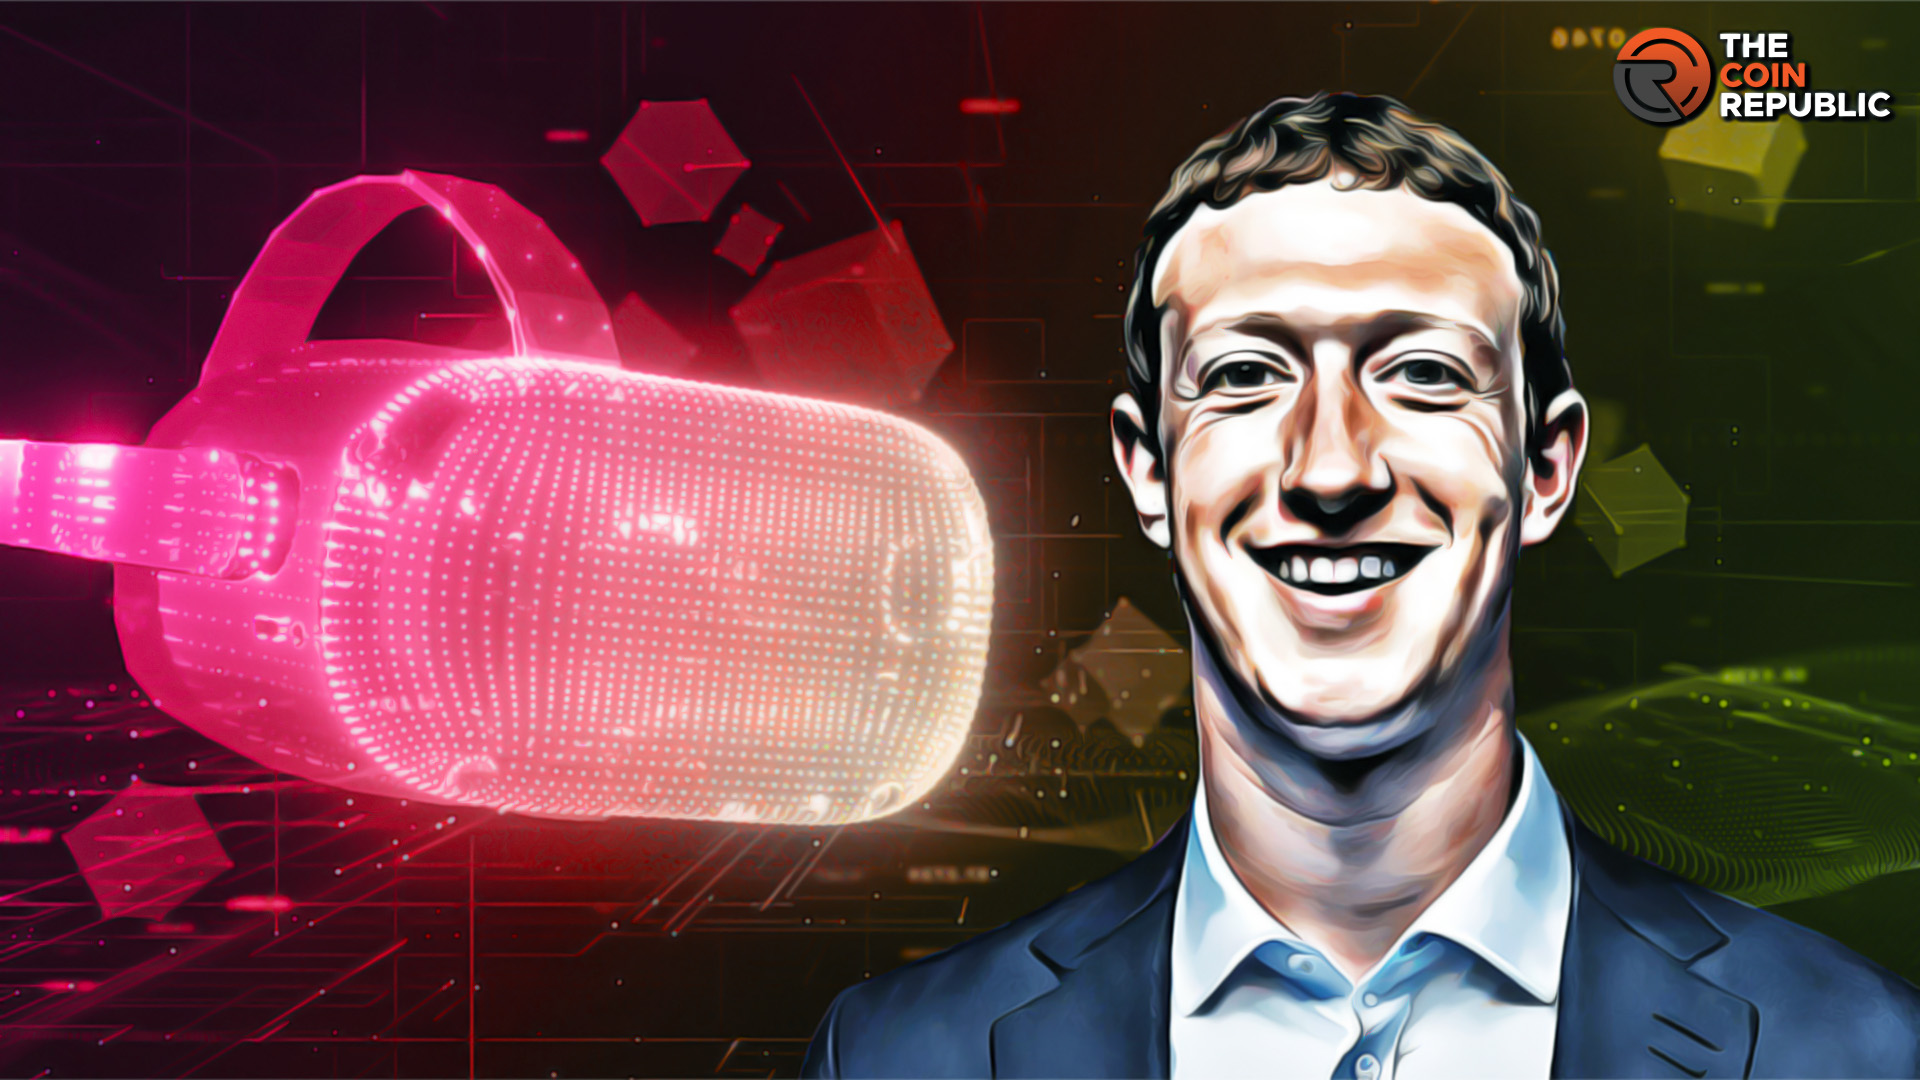 Metaverse: Mark Zuckerberg and Lex Fridman